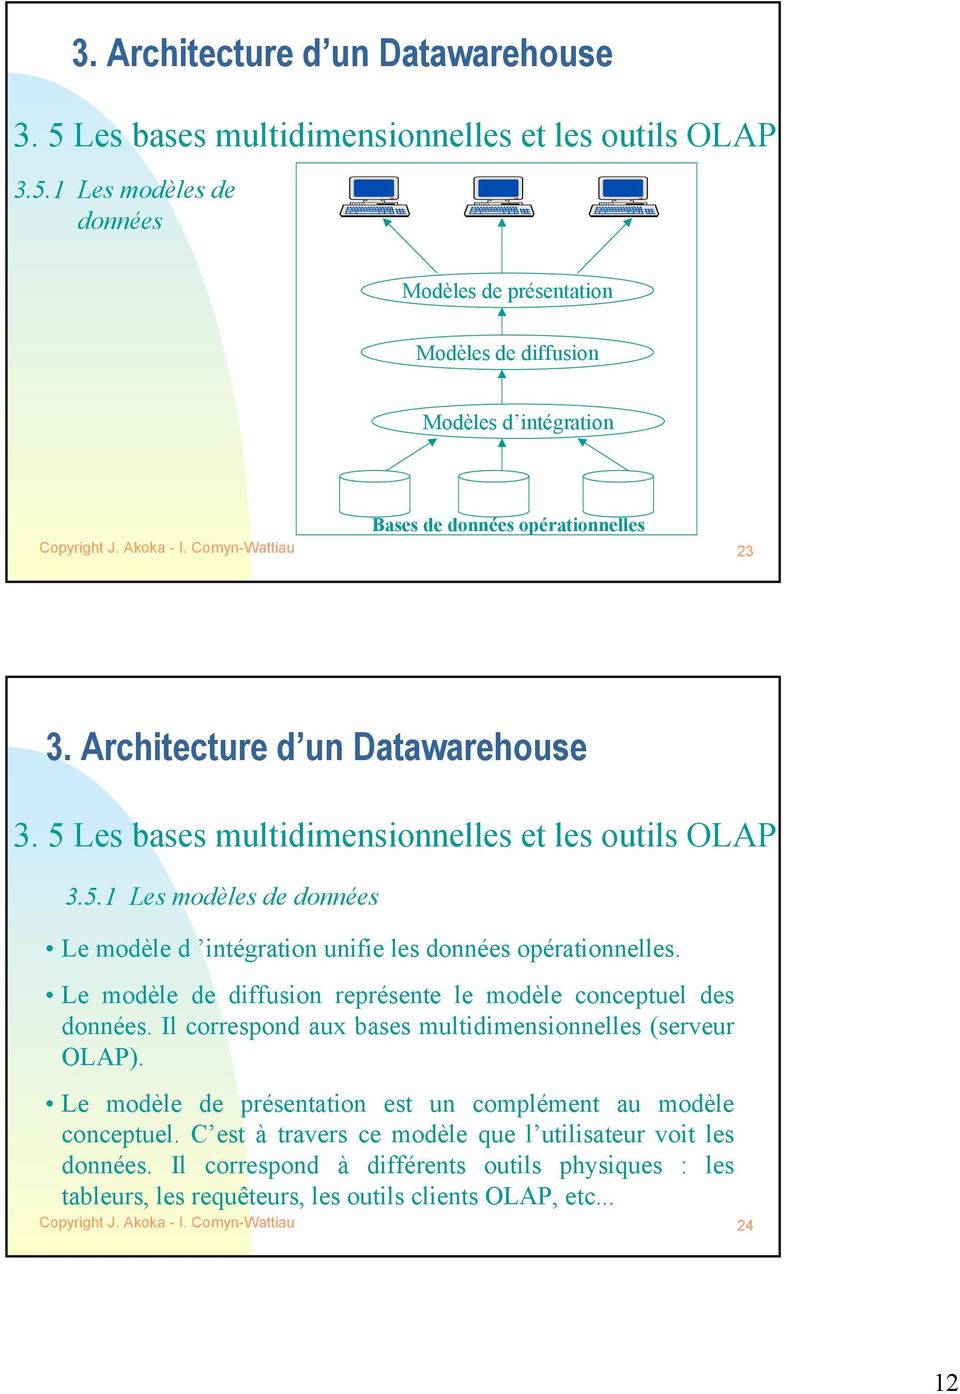 Le modèle de diffusion représente le modèle conceptuel des données. Il correspond aux bases multidimensionnelles (serveur OLAP).